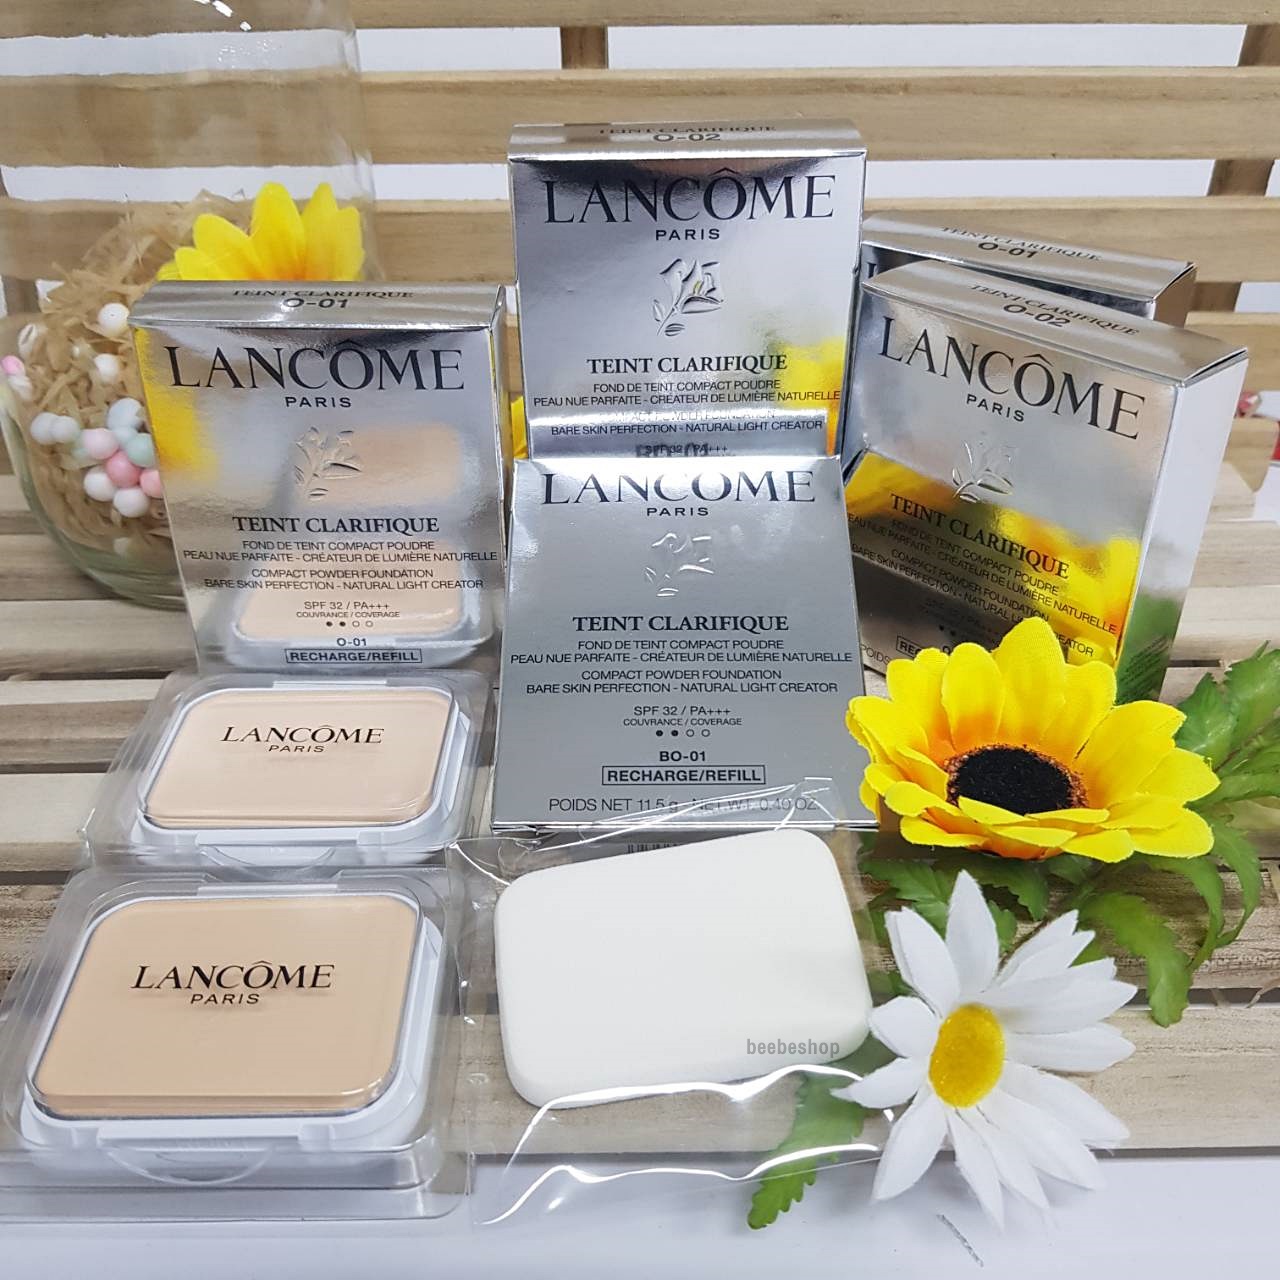 แนะนำ ใหม่ล่าสุด!! Lancome Teint Clarifique Compact Powder Foundation 11.5g Refill และตลับแป้ง Blanc Expert , Teint Miracle